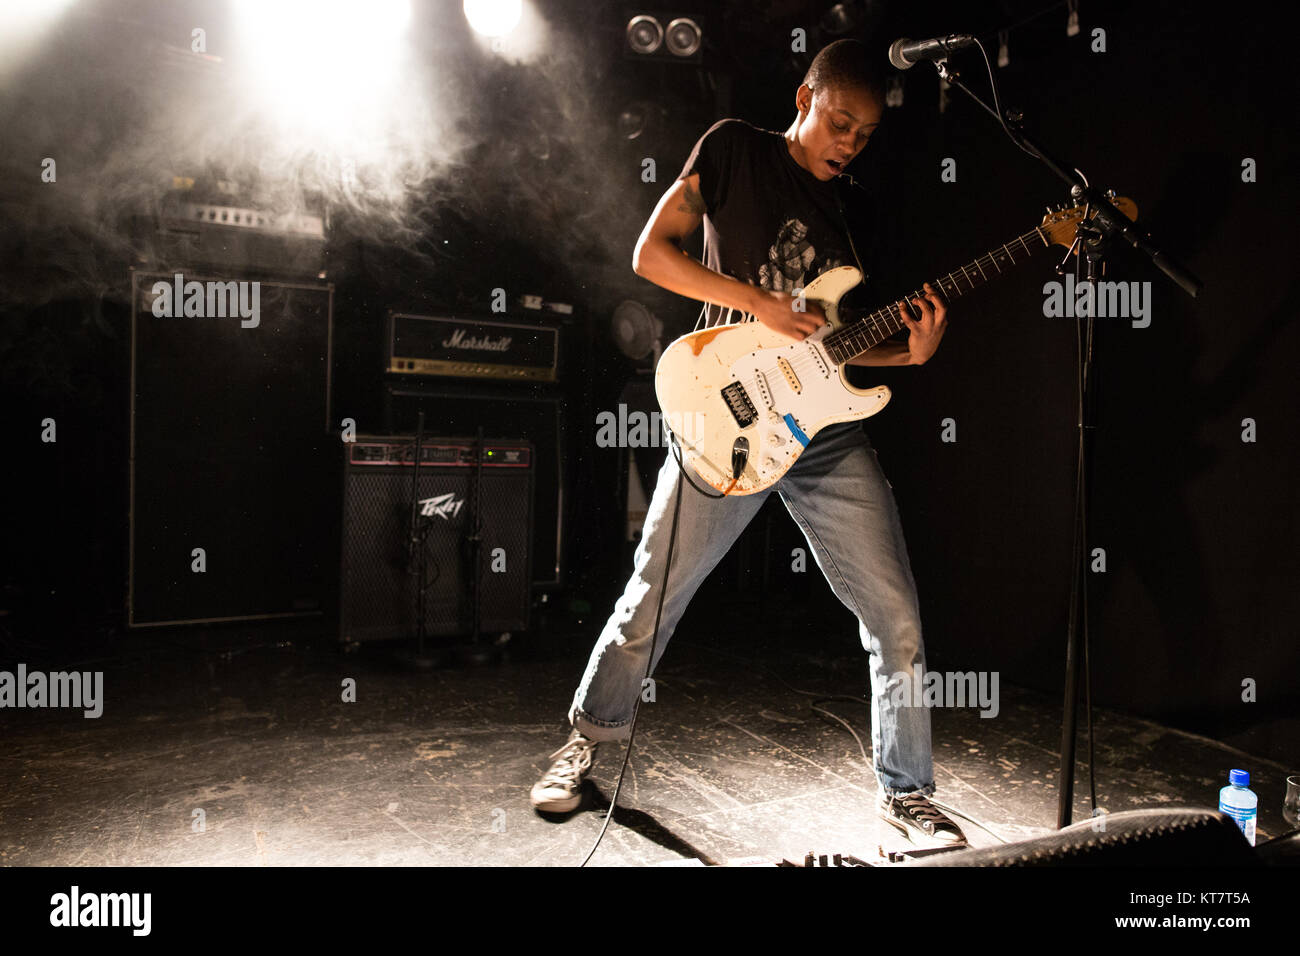 Die britische Punkband Jugend Mann führt ein Live Konzert von John Dee in Oslo. Hier Sänger und Gitarrist Kaila Whyte ist live auf der Bühne gesehen. Norwegen, 14.03.2017. Stockfoto